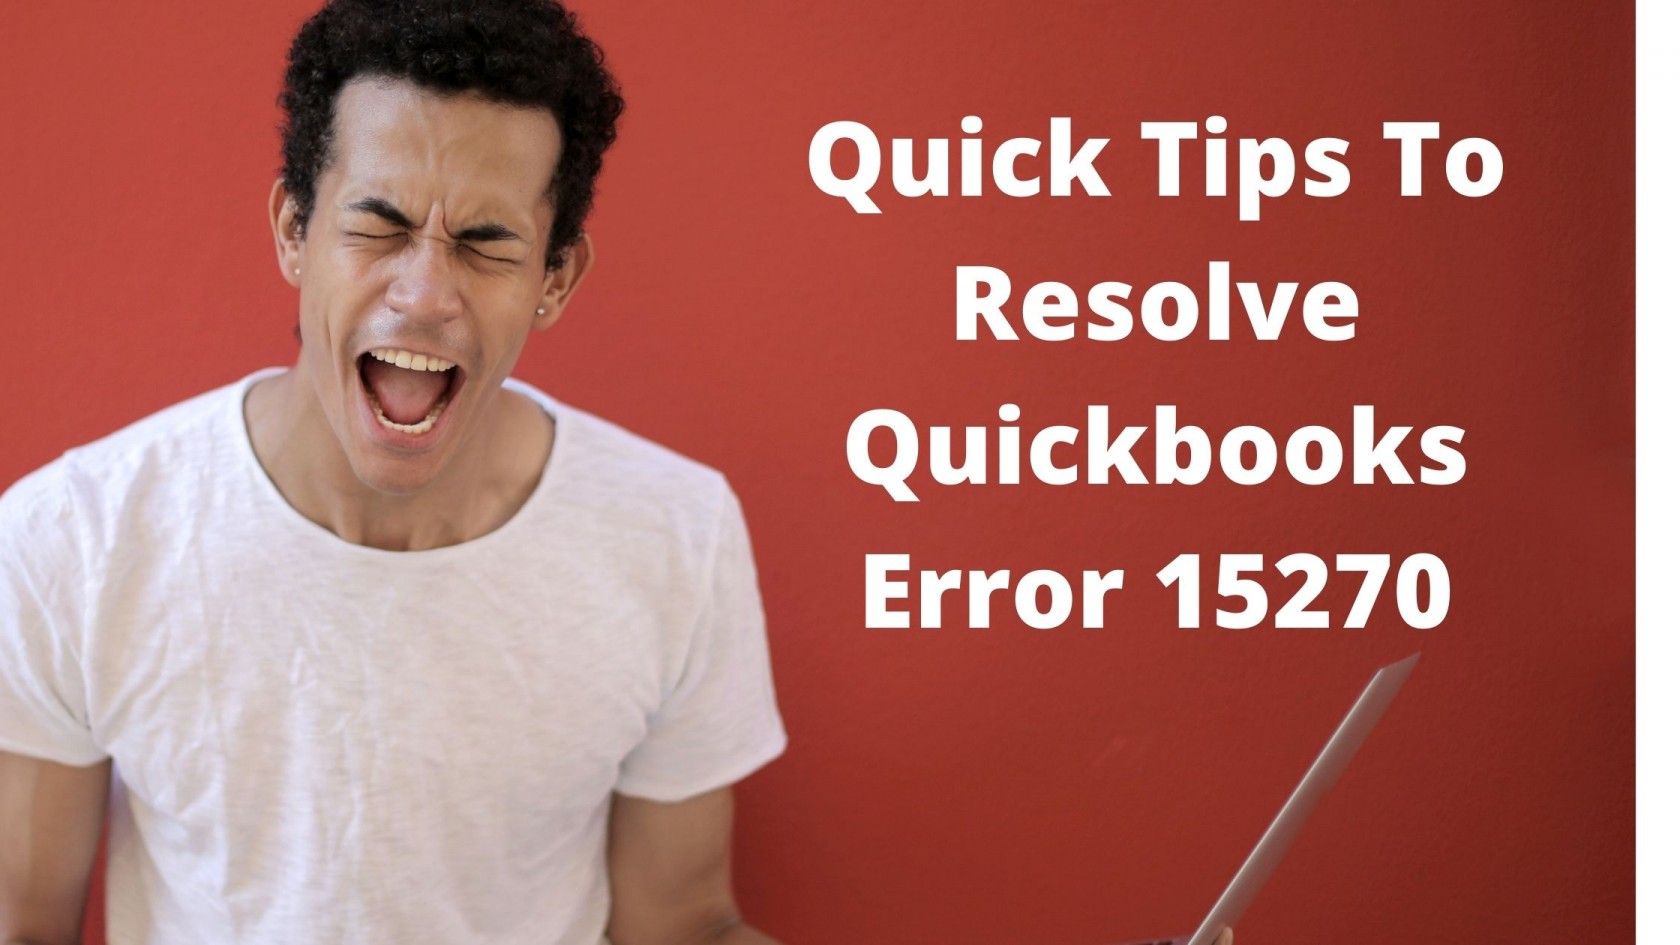 Resolve QuickBooks Error 15270